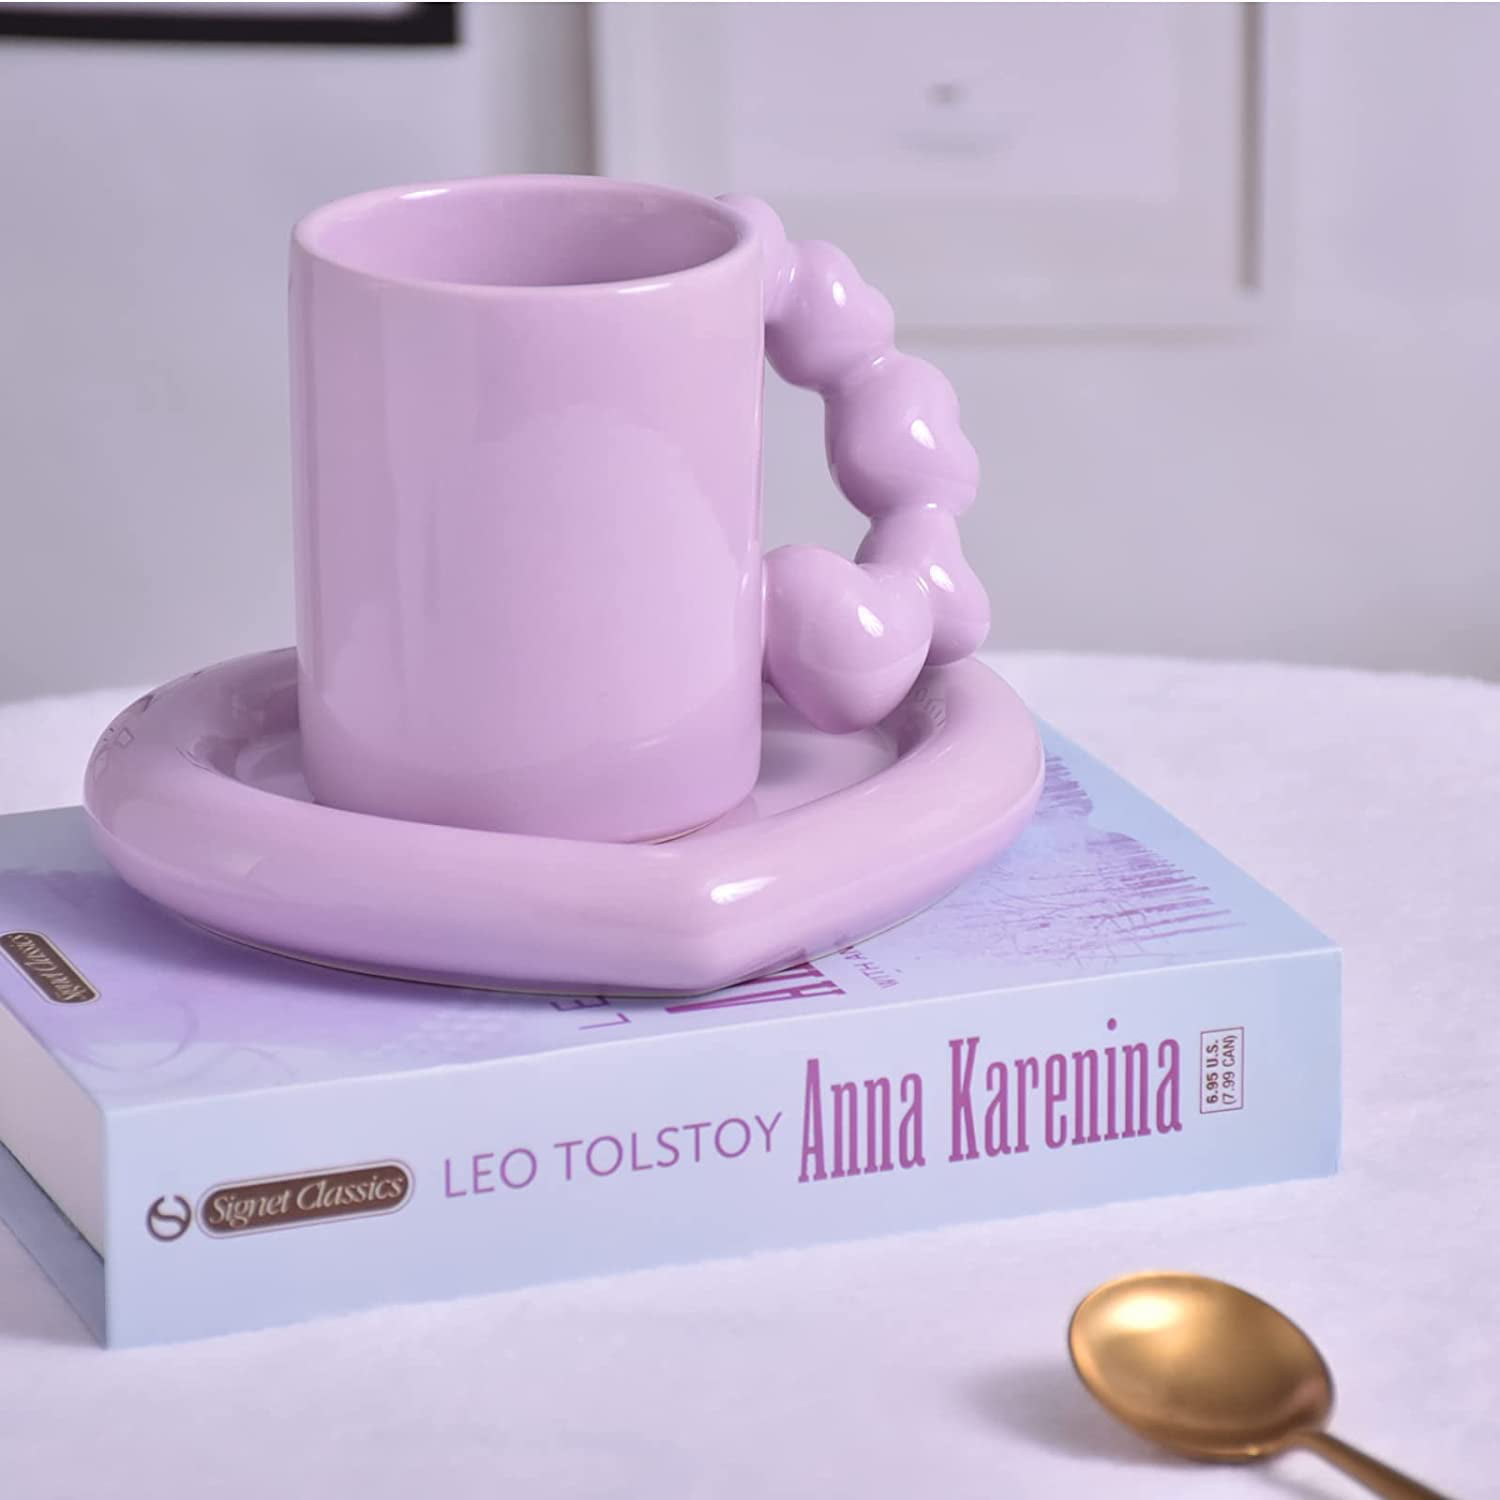 Glasified Lavazza Purple Coffee Ceramic Coffee Mug Price in India - Buy  Glasified Lavazza Purple Coffee Ceramic Coffee Mug online at